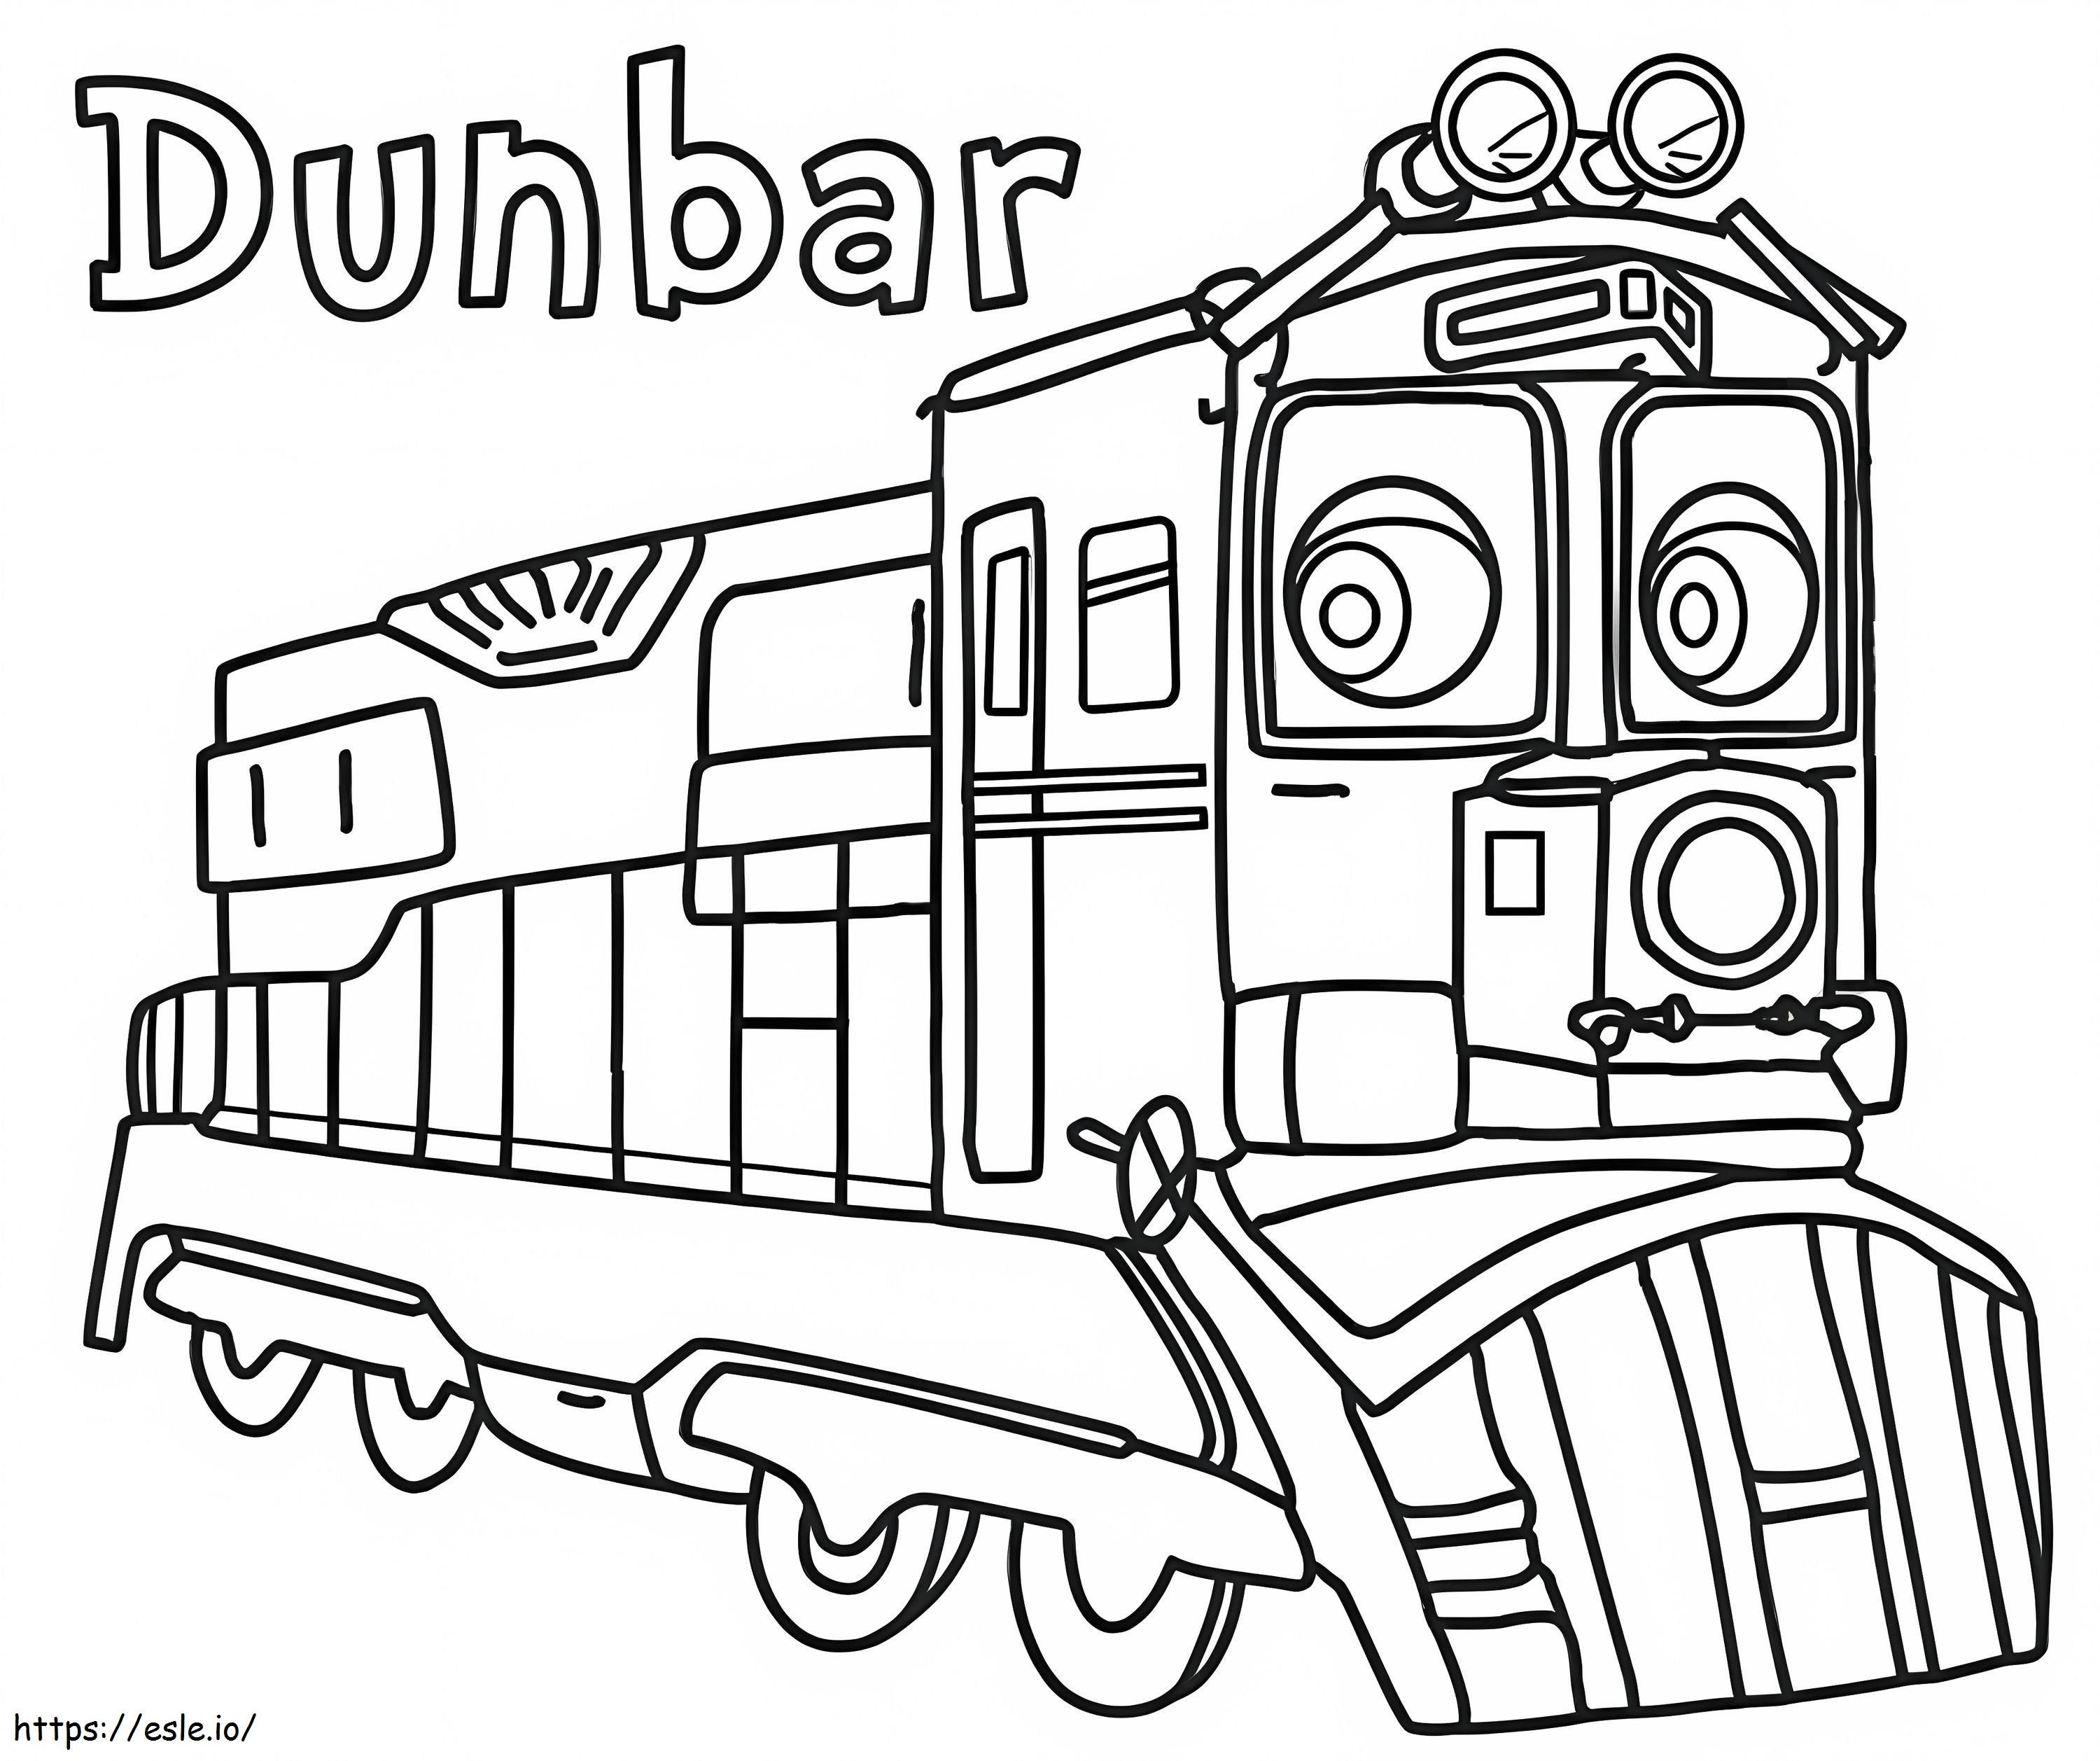 Dunbar aus Chuggington ausmalbilder